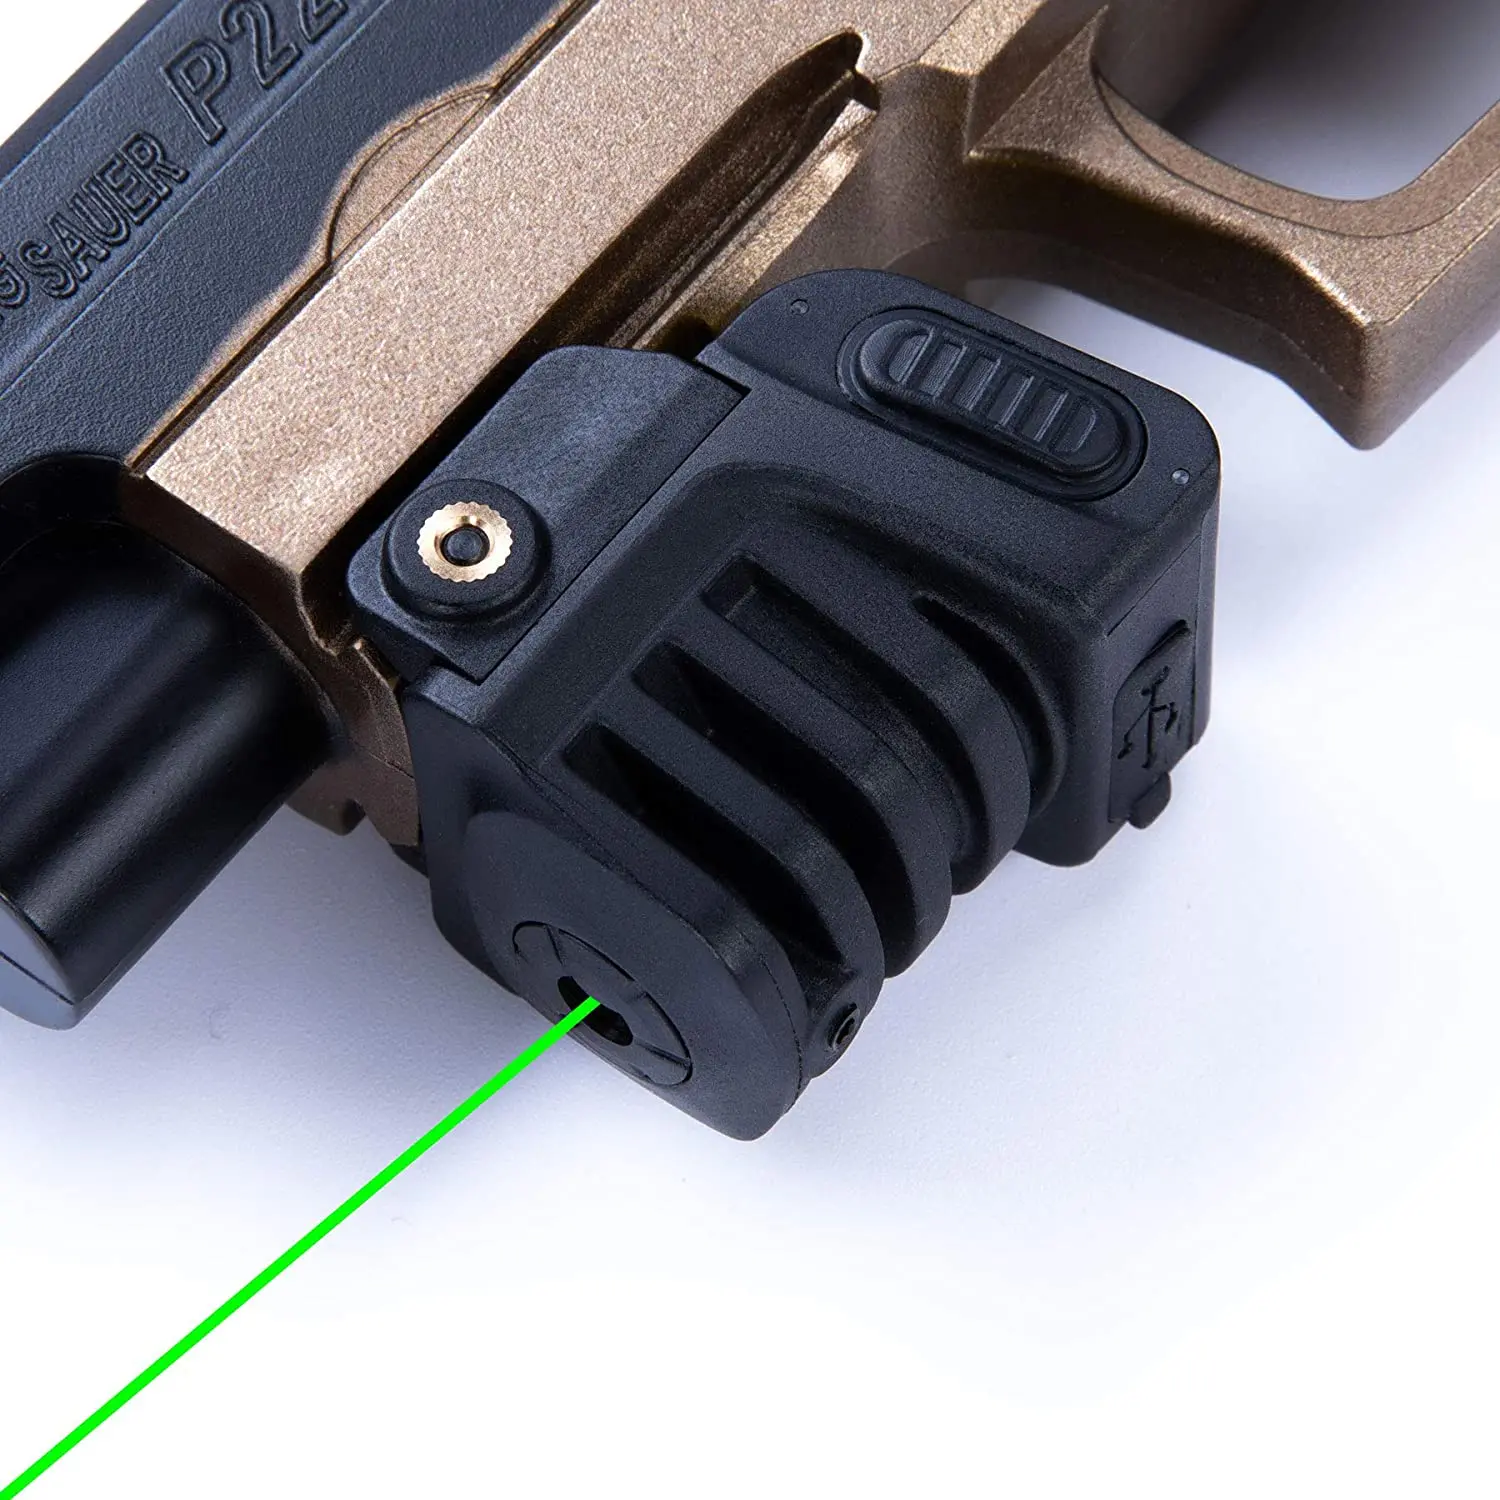 

USB перезаряжаемая компактная Зеленая лазерная указка Taurus g2c, прицел 9 мм, пистолет Glock 17 19 CZ 75, лазерное оружие для защиты